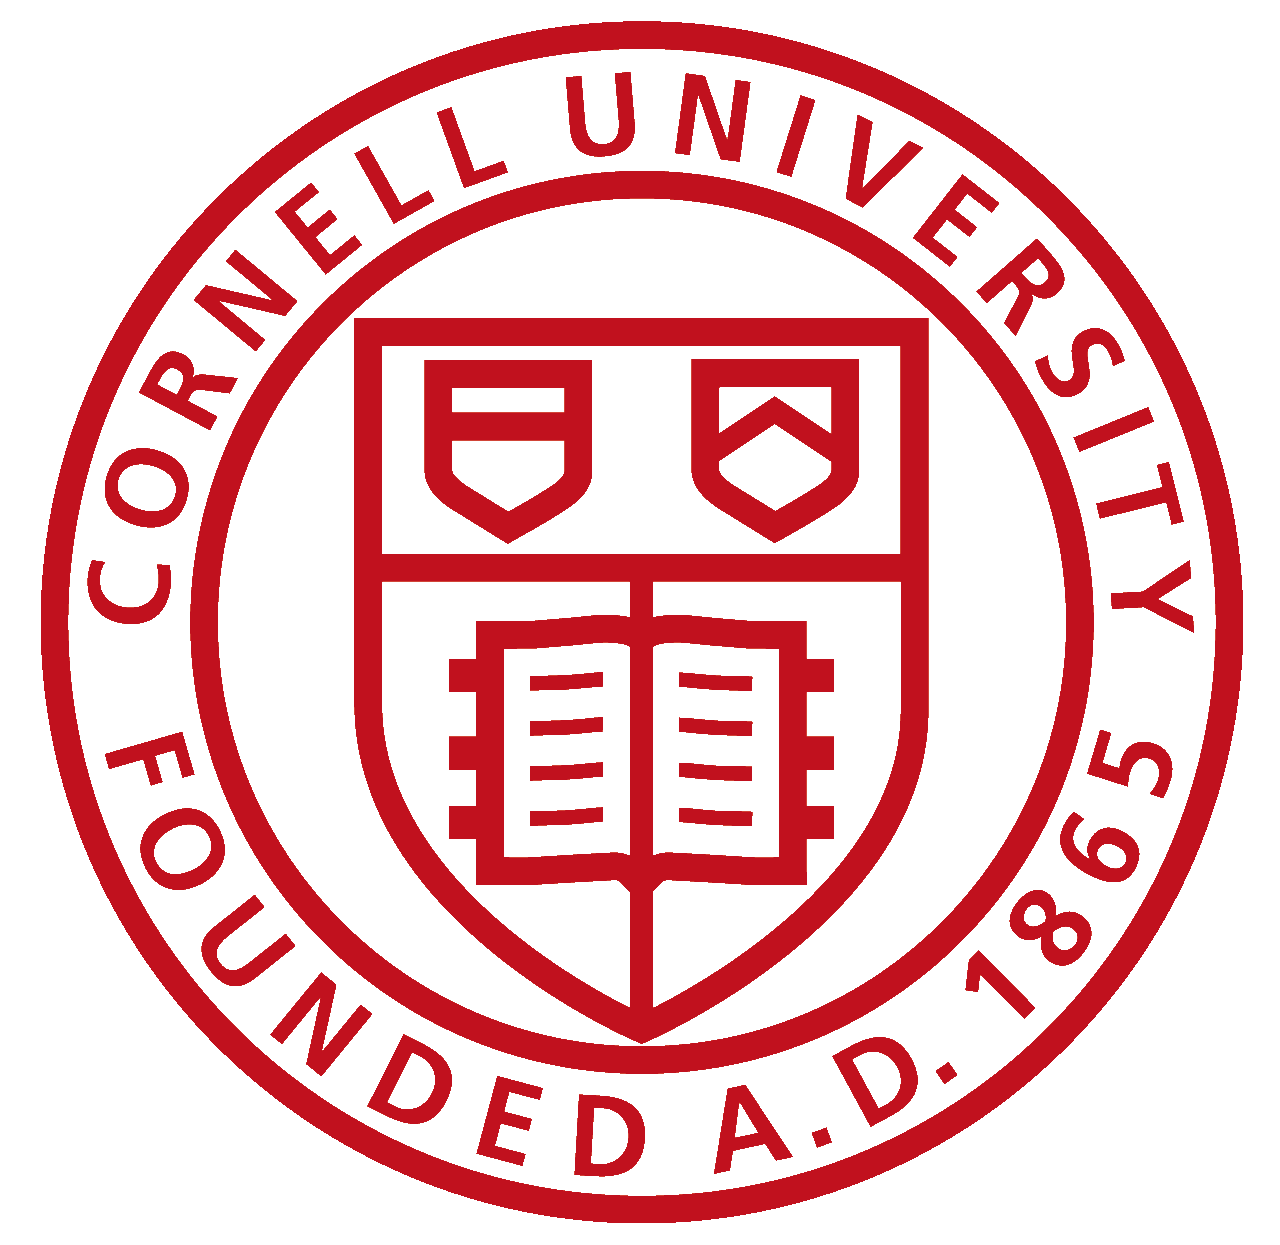 Cornell university resume samples